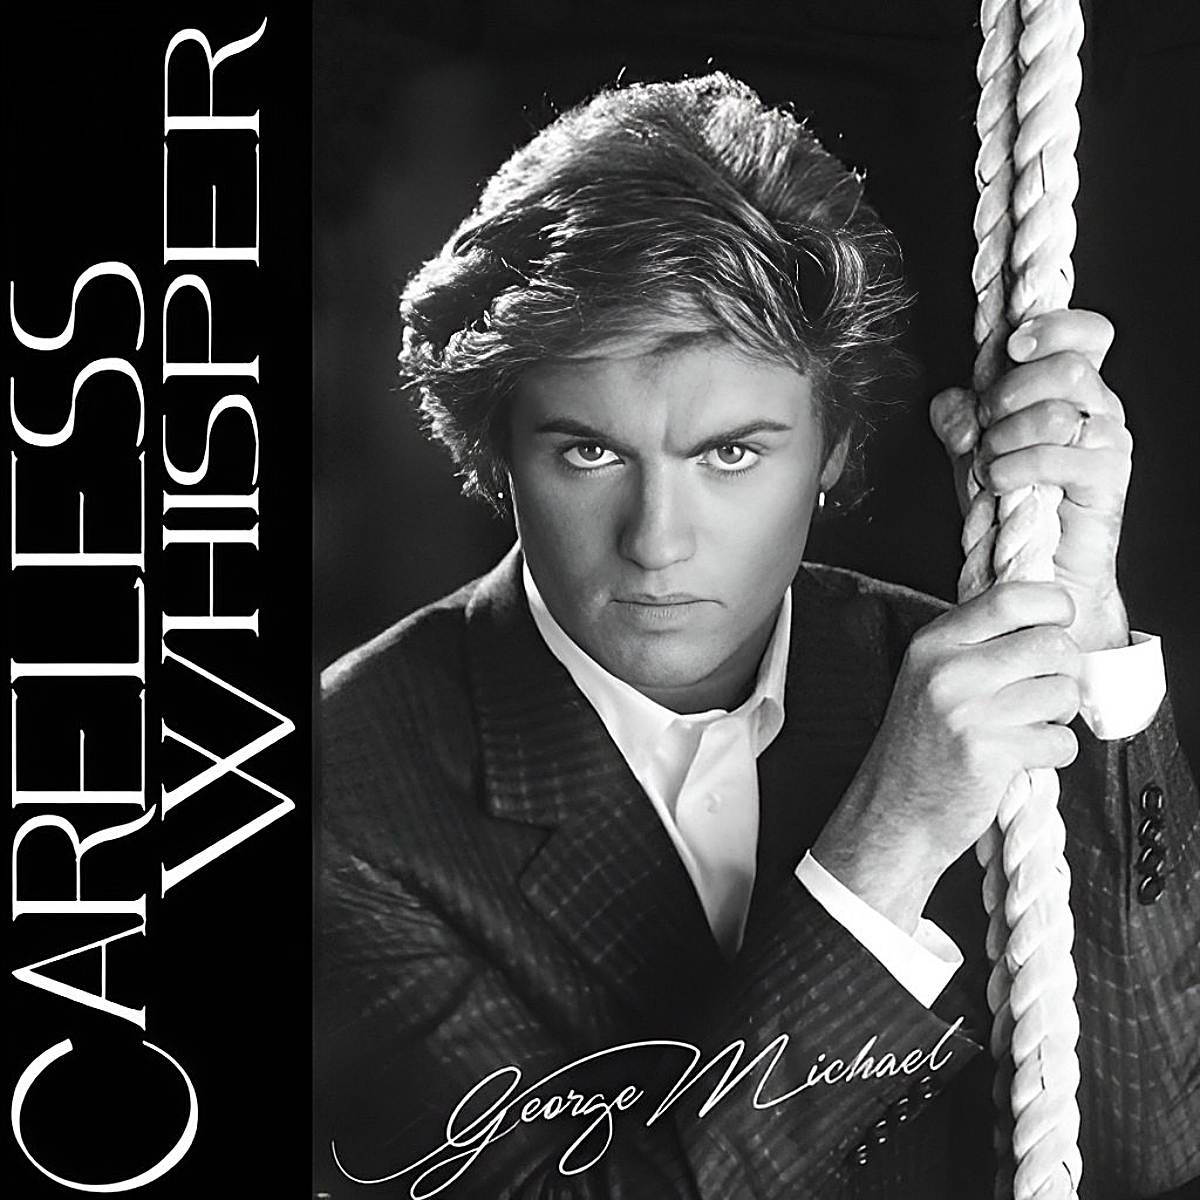 George Michael sur la couverture de la chanson "Careless Whisper".